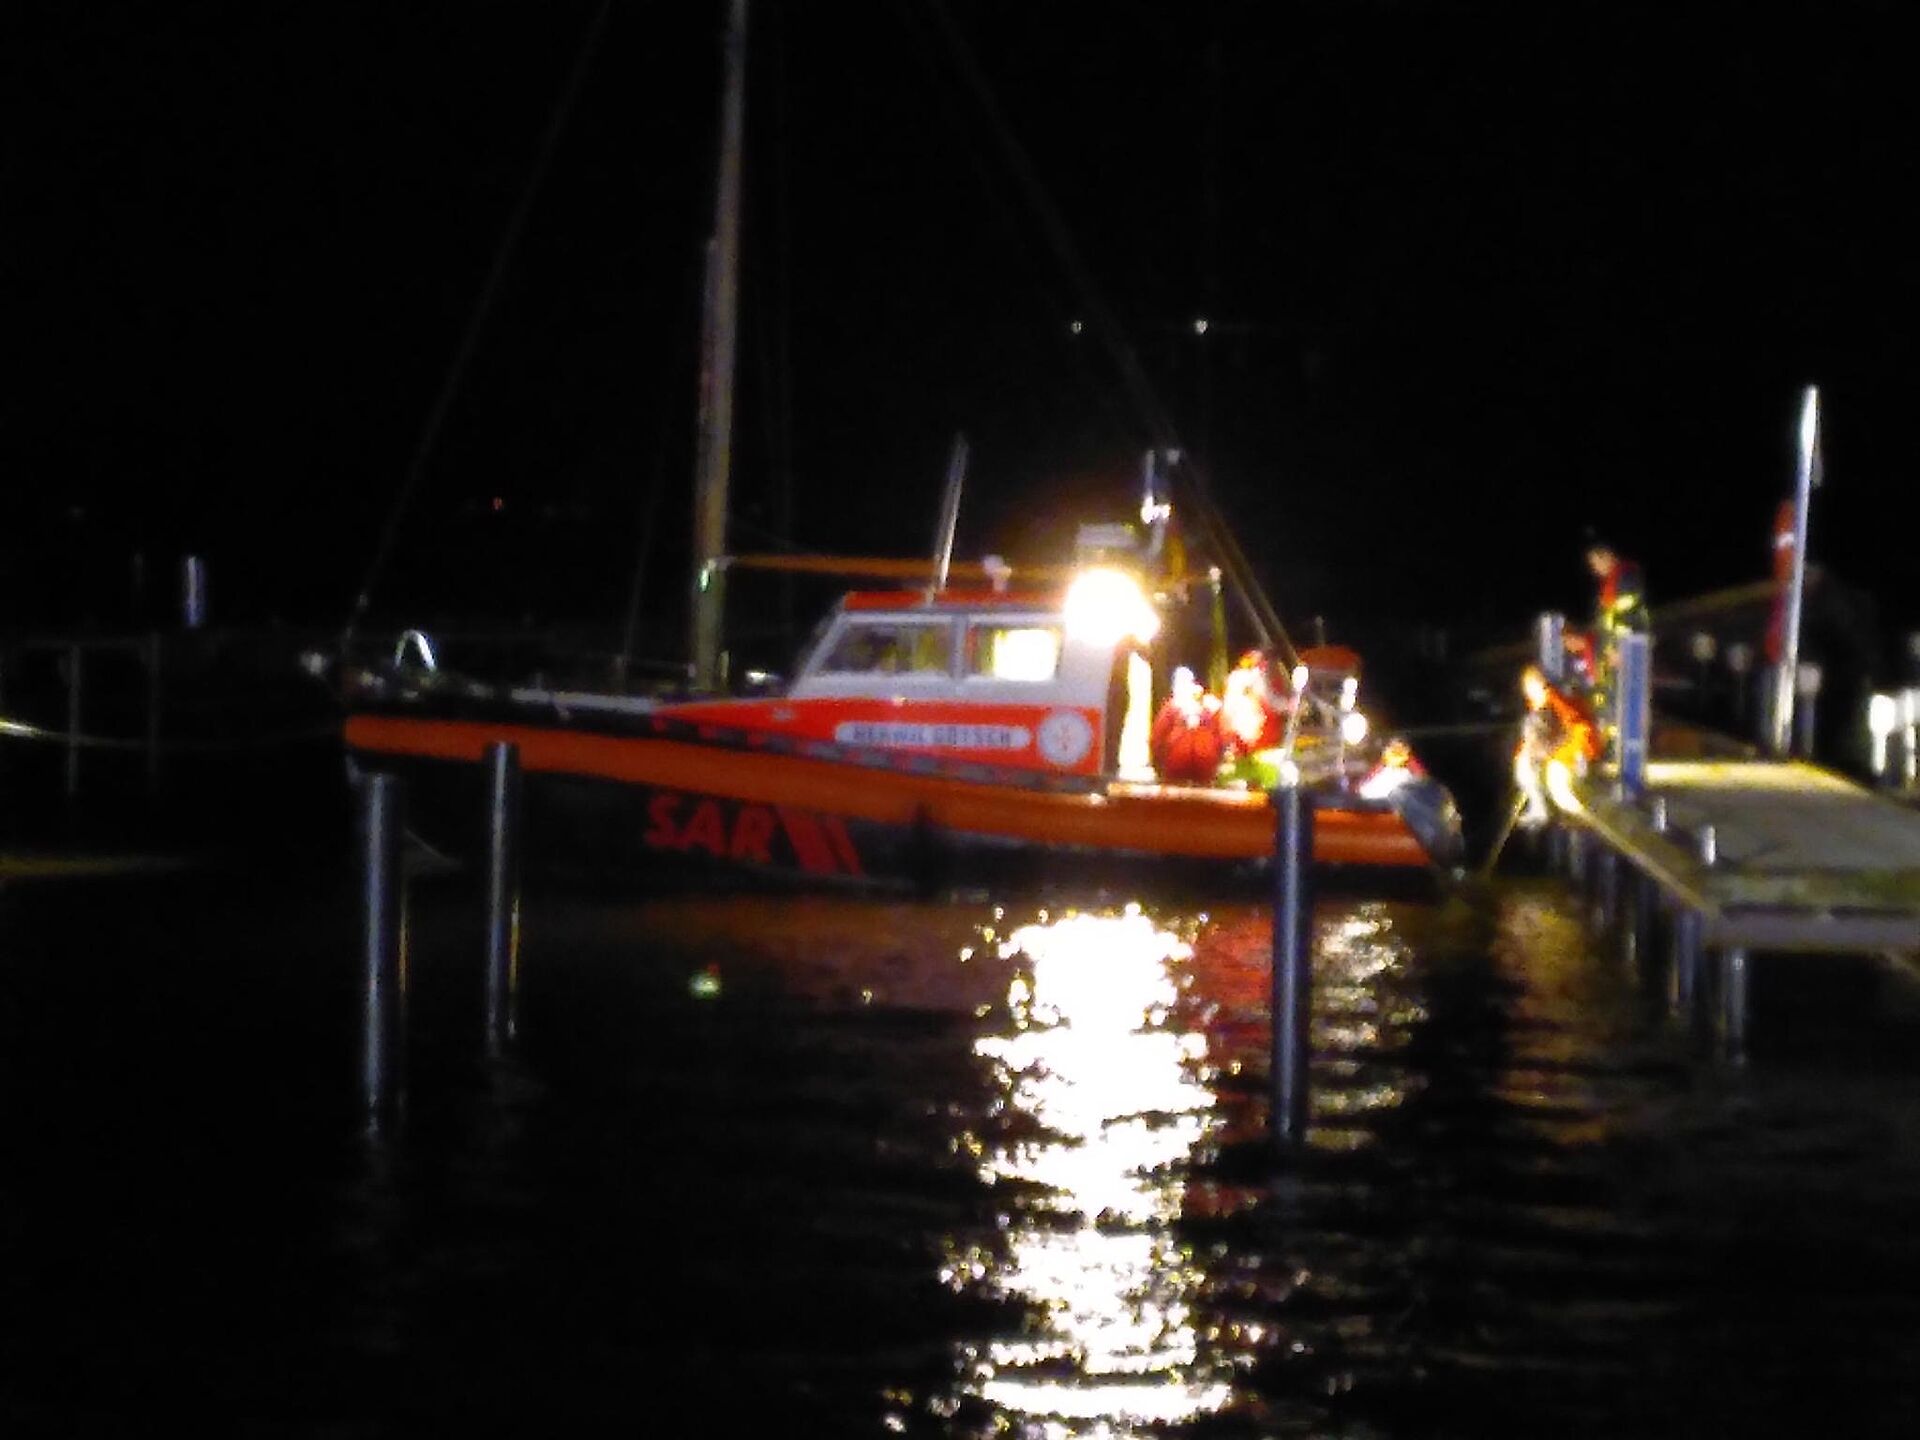 Ein hell erleuchtetes Seenotrettungsboot bei völliger Dunkelheit im Einsatz an einem Steg in einem Hafen